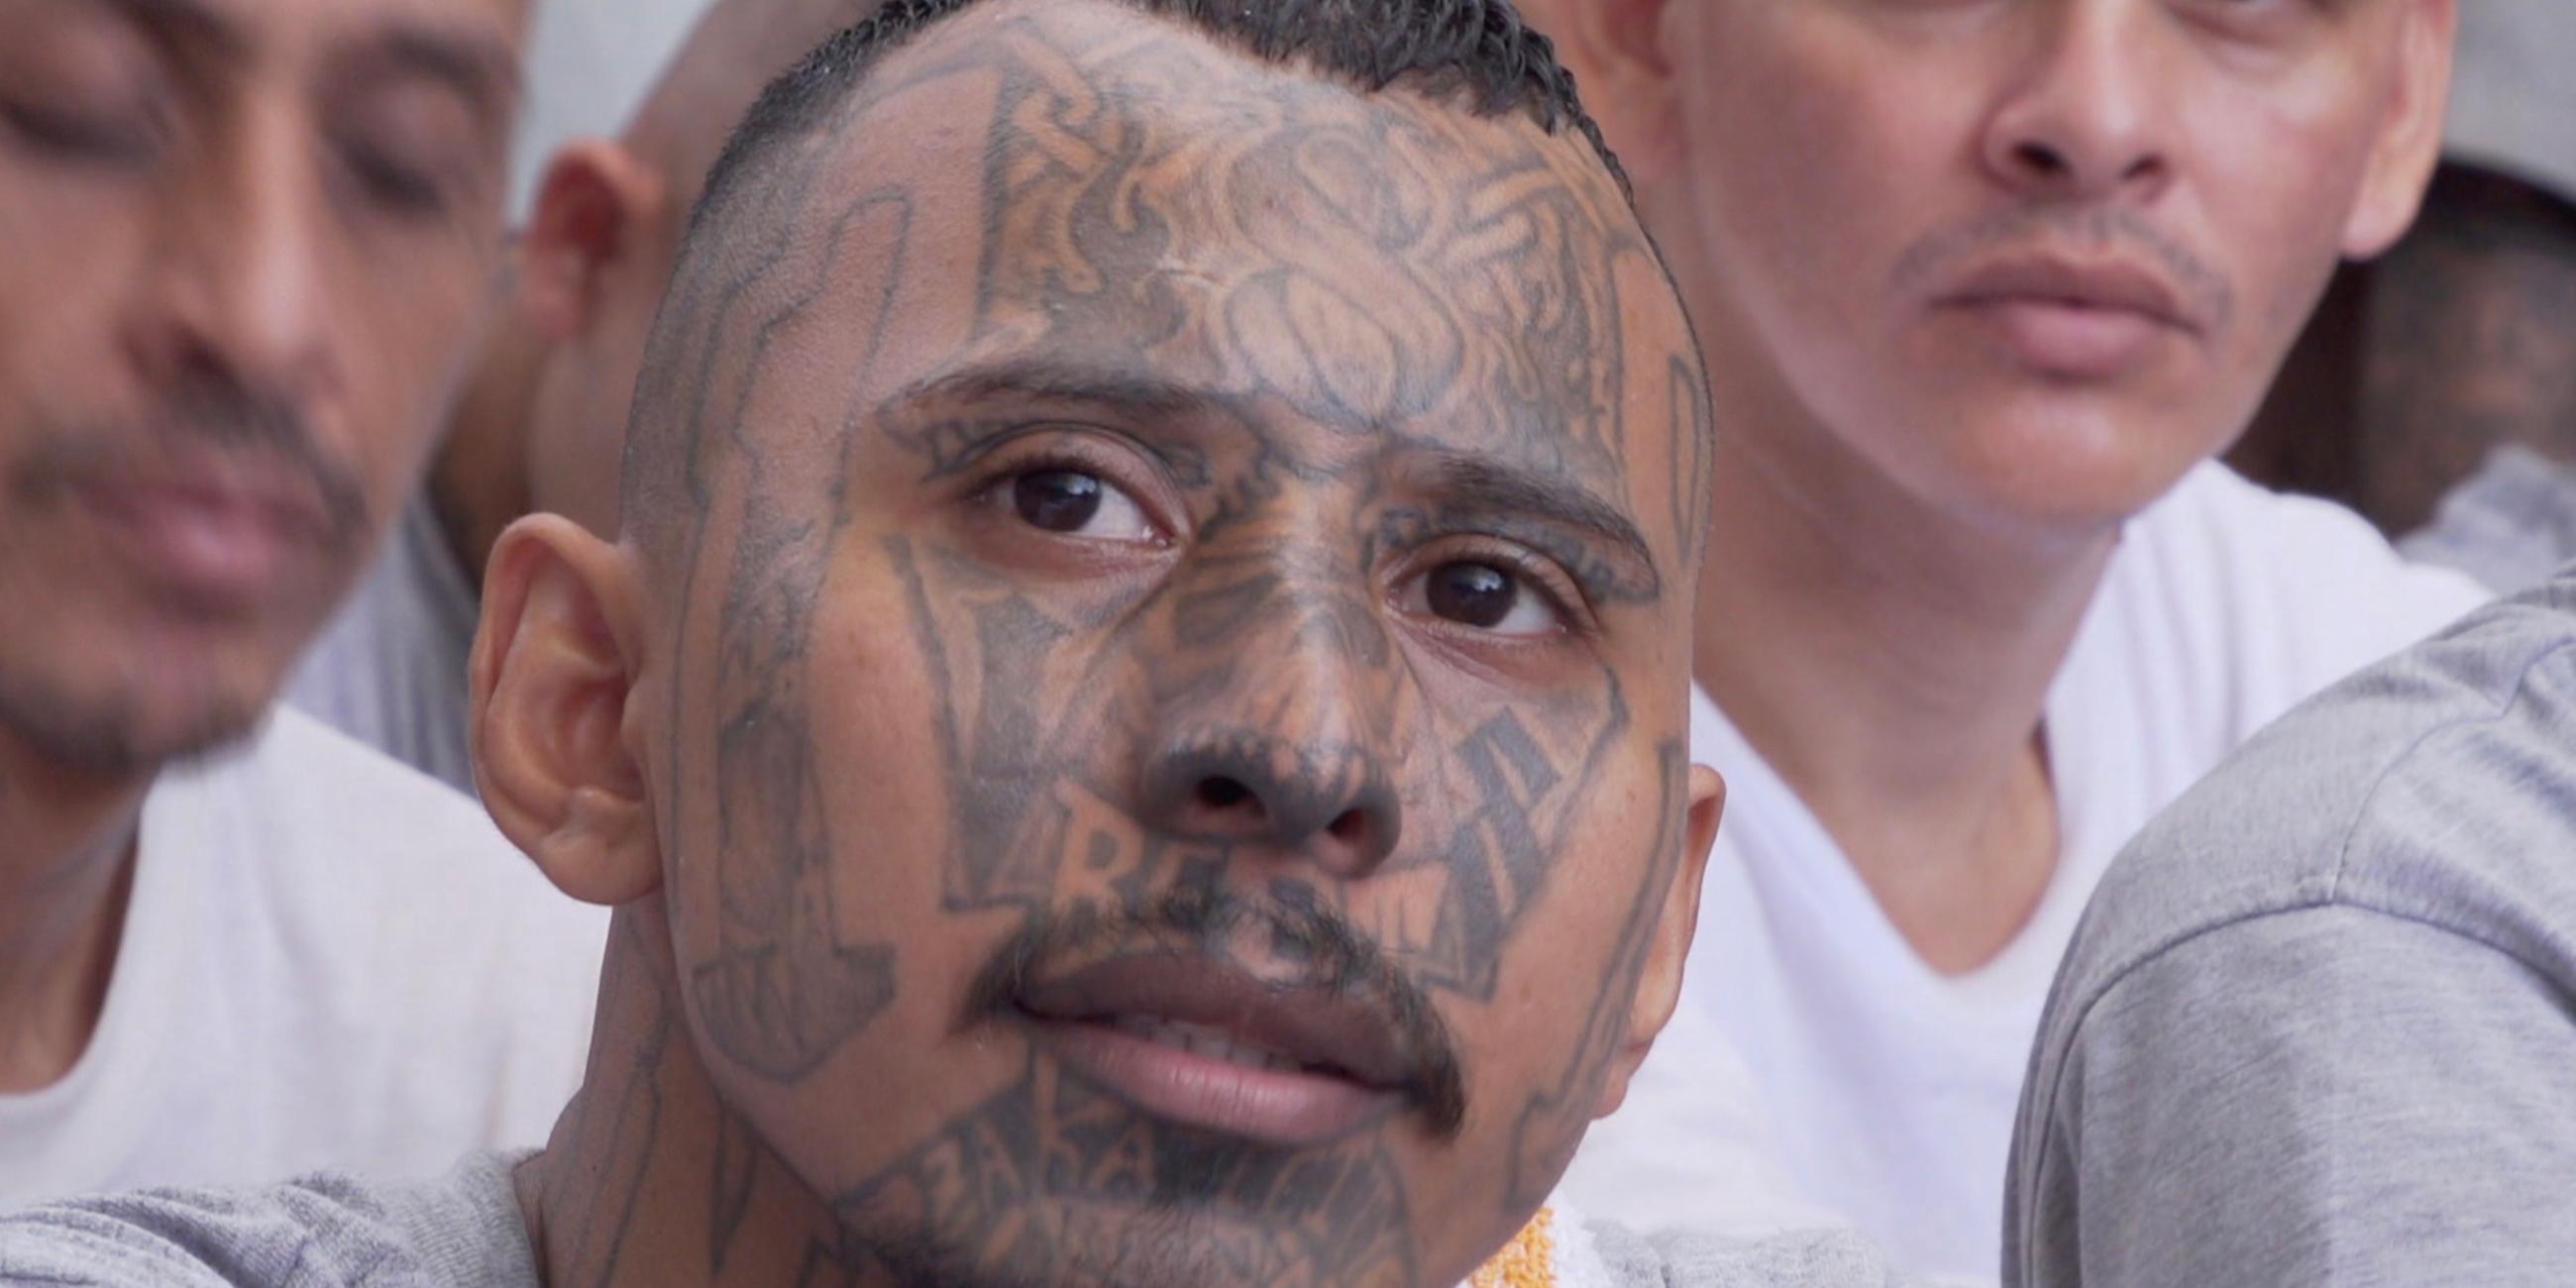 Ein junger Mann mit tätowiertem Gesicht und grauem T-Shirt sitzt neben anderen Männern mit Tattoos.